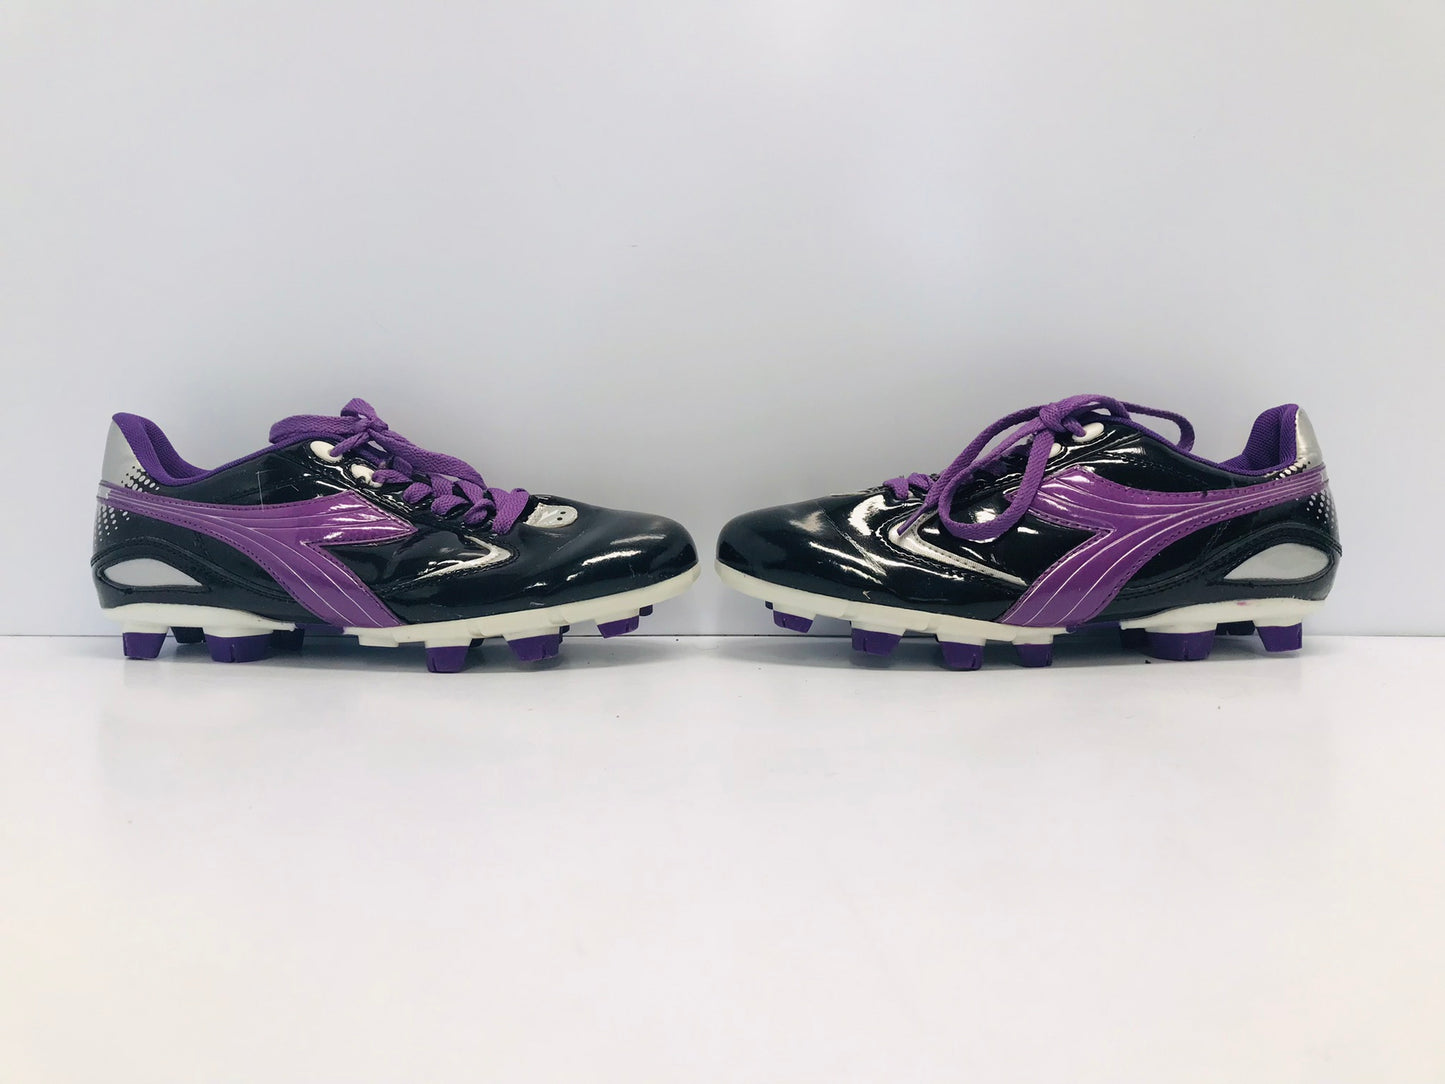 Soccer Shoes Cleats Women's Size 8 Diadora Black Purple Excellent